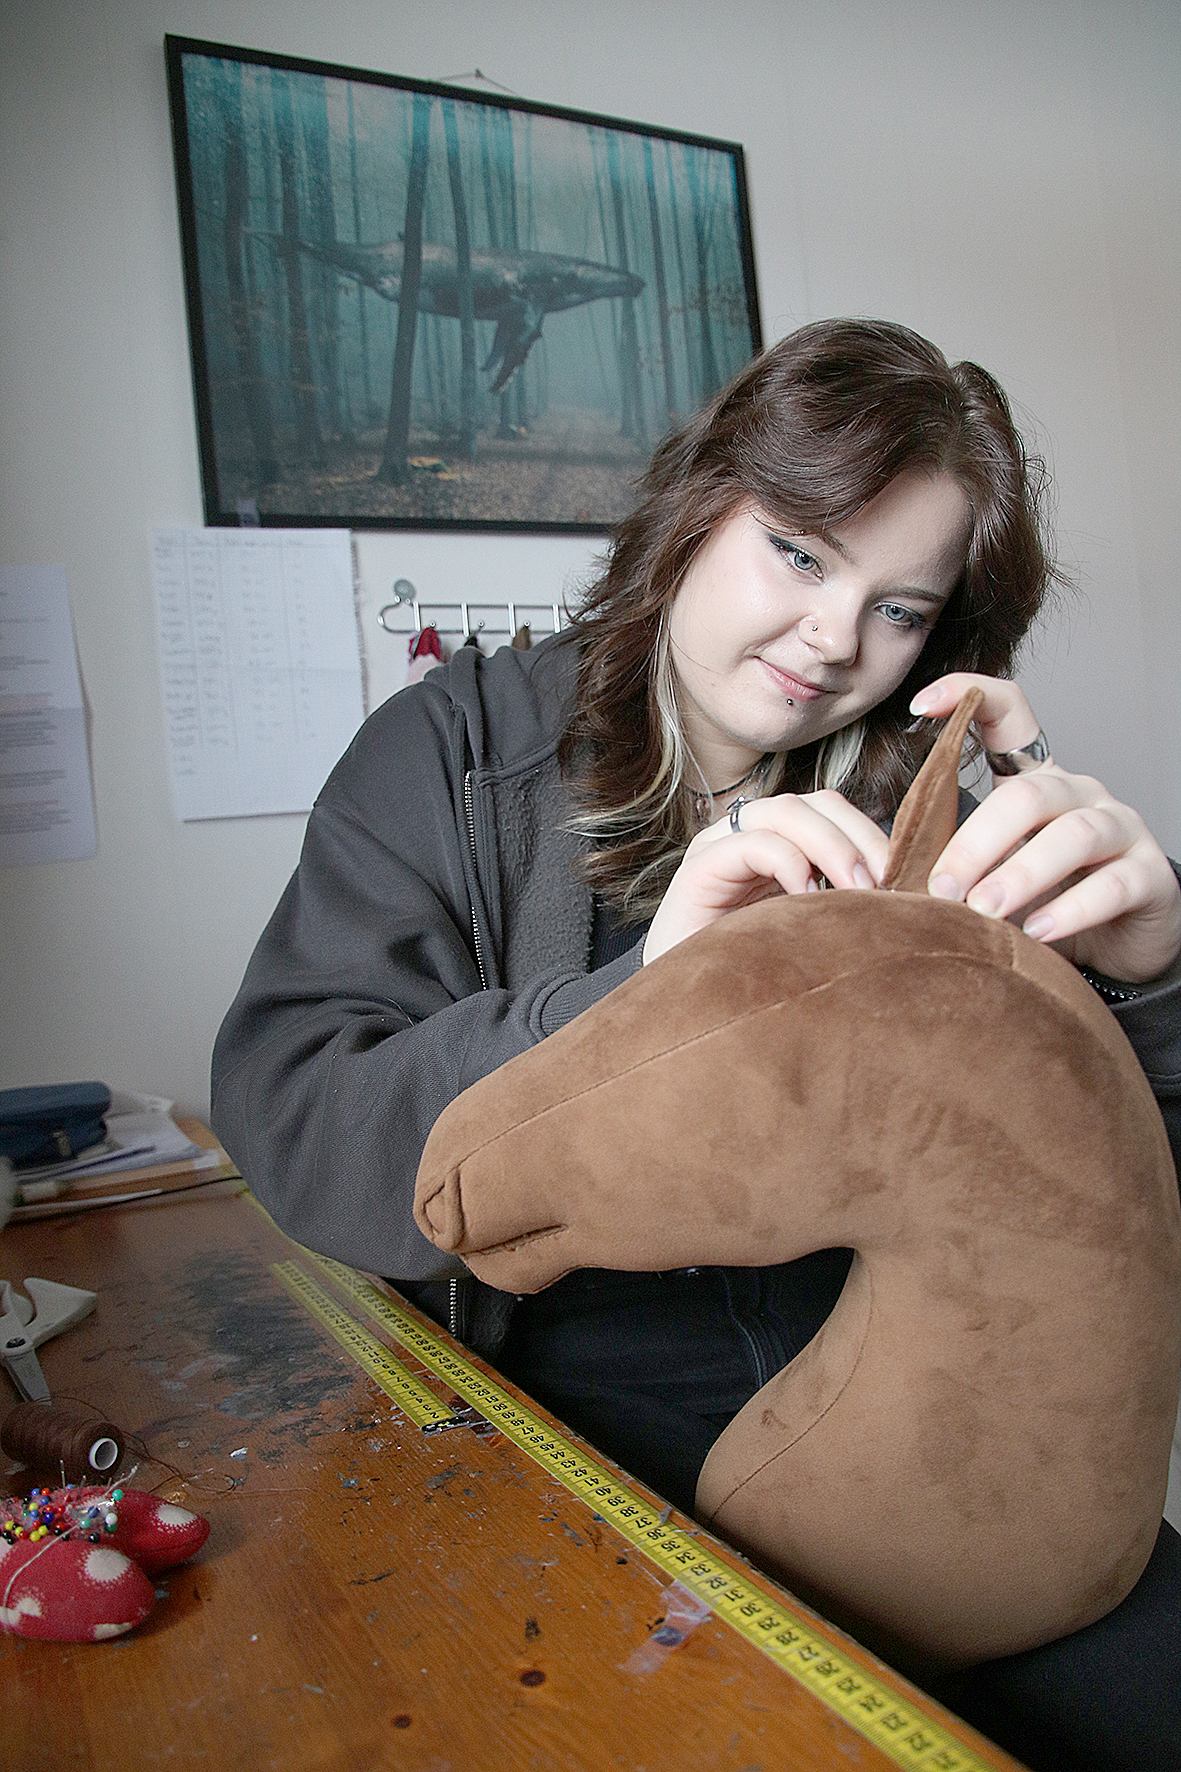 Yhden keppihevosen valmistamiseen Elina Tuononen käyttää 8–12 tuntia. Kepparit hän tekee käsityönä. Kuvassa hän ompelee paikalleen yhden hevosen korvaa.